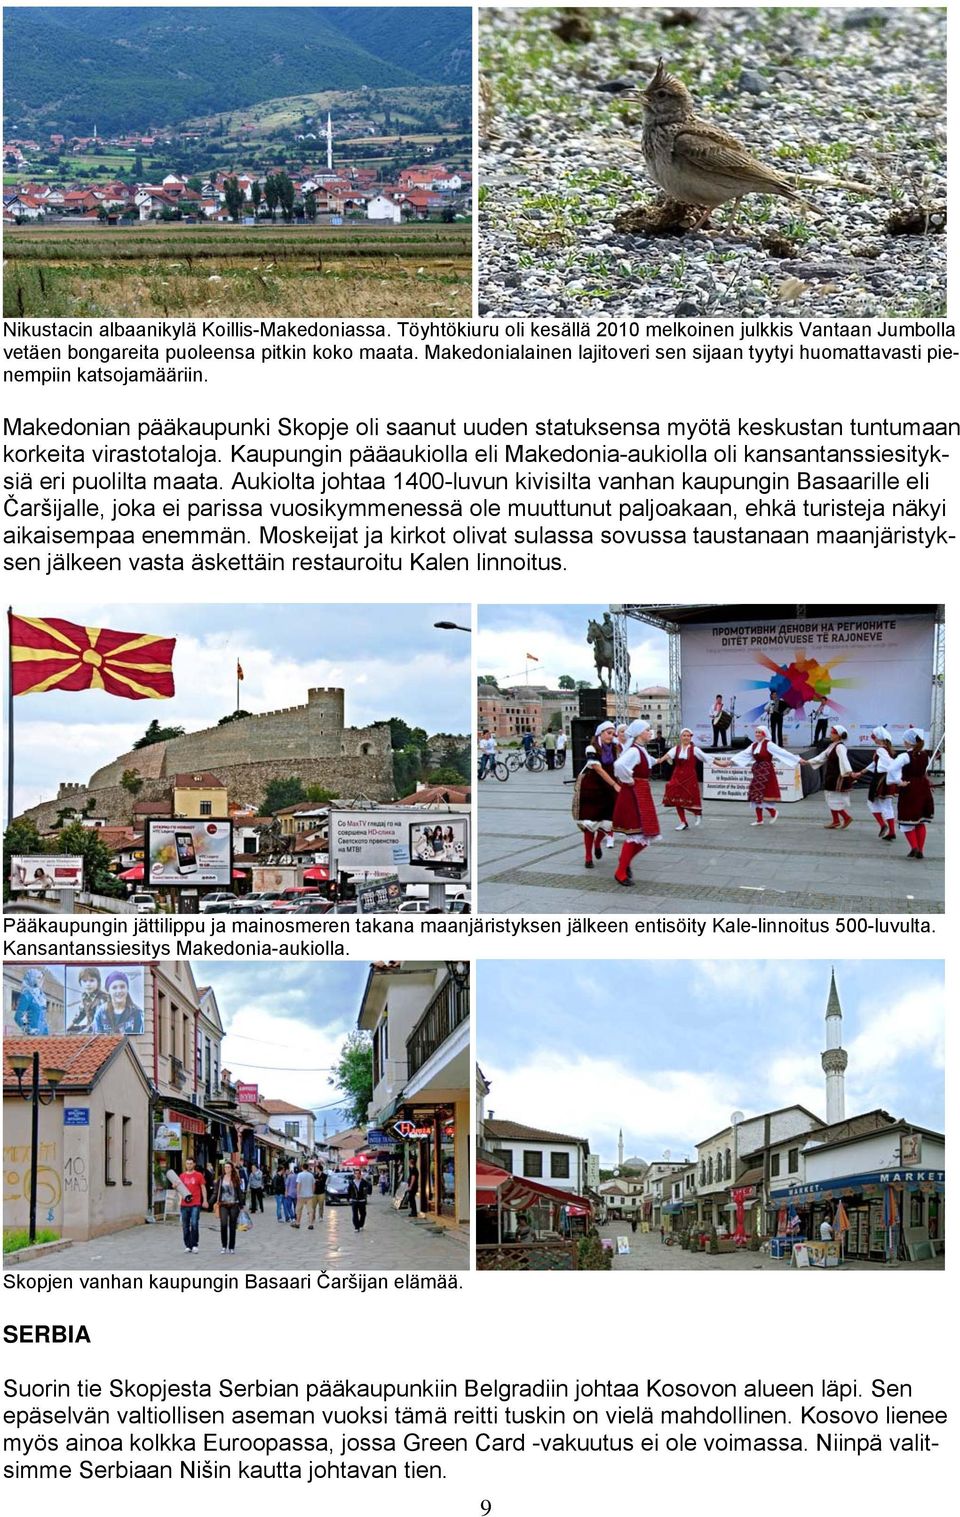 Kaupungin pääaukiolla eli Makedonia-aukiolla oli kansantanssiesityksiä eri puolilta maata.